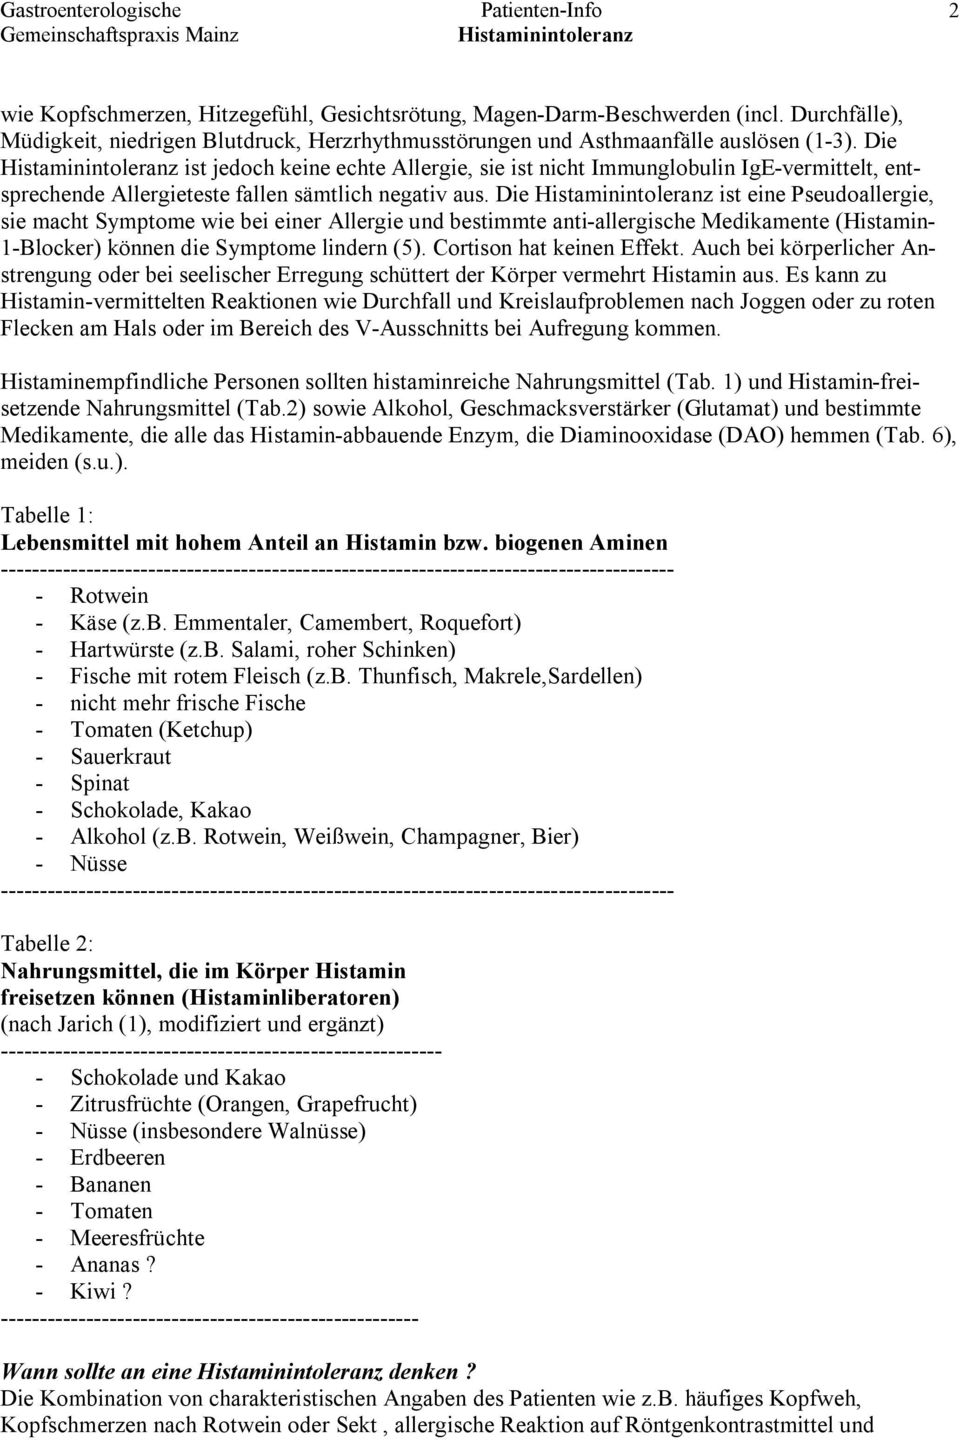 Patienten-Info. Unverträglichkeit von Histamin und biogenen Aminen - PDF  Free Download